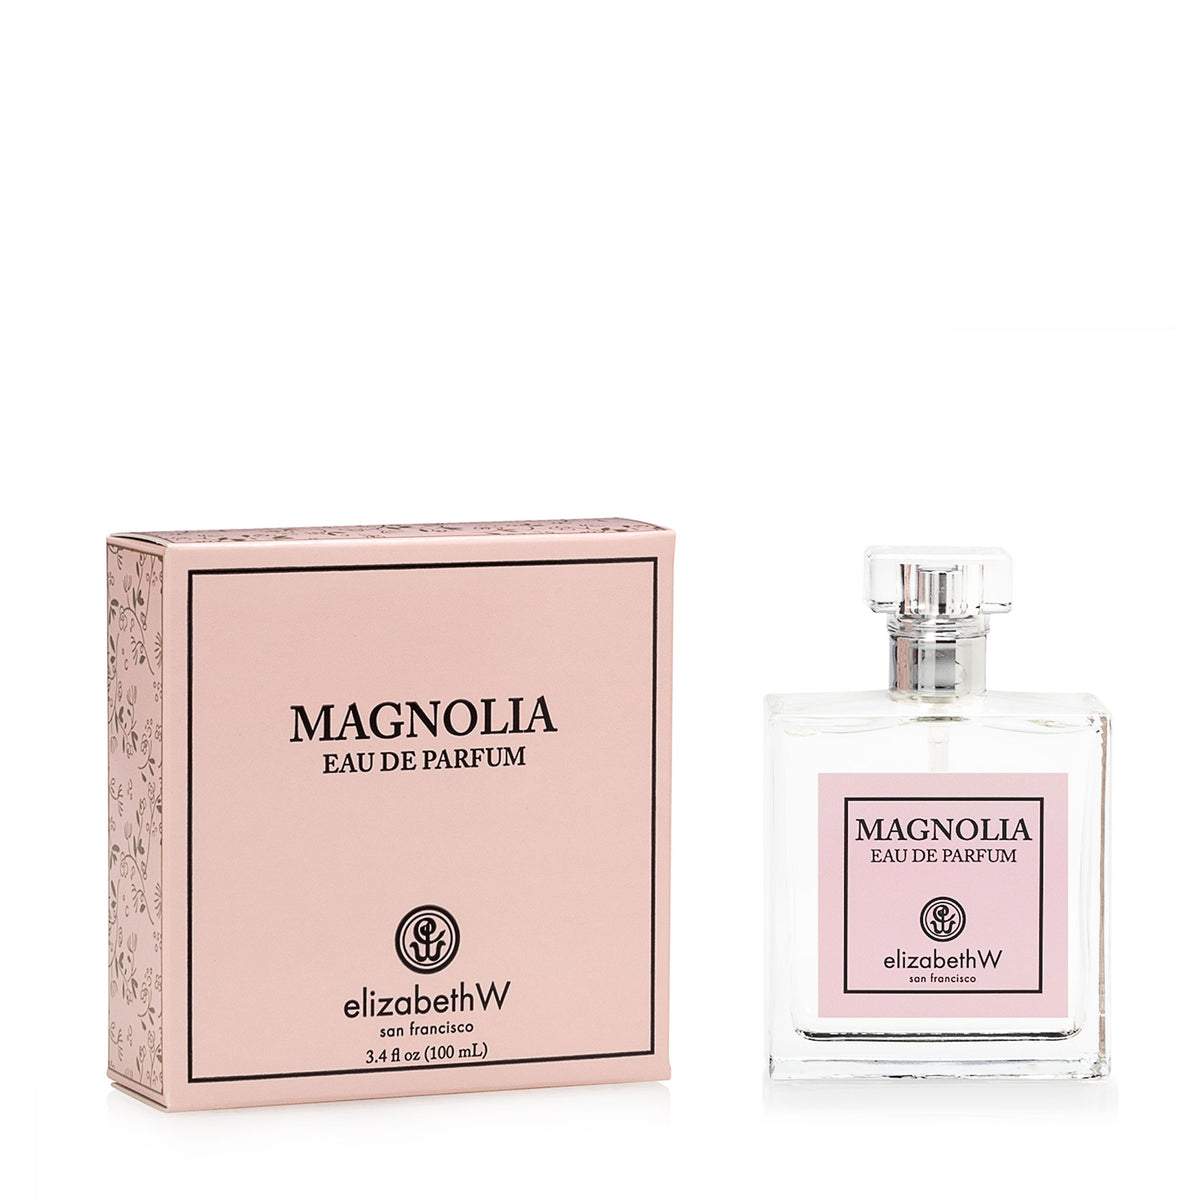 Magnolia Eau de Parfum-Large